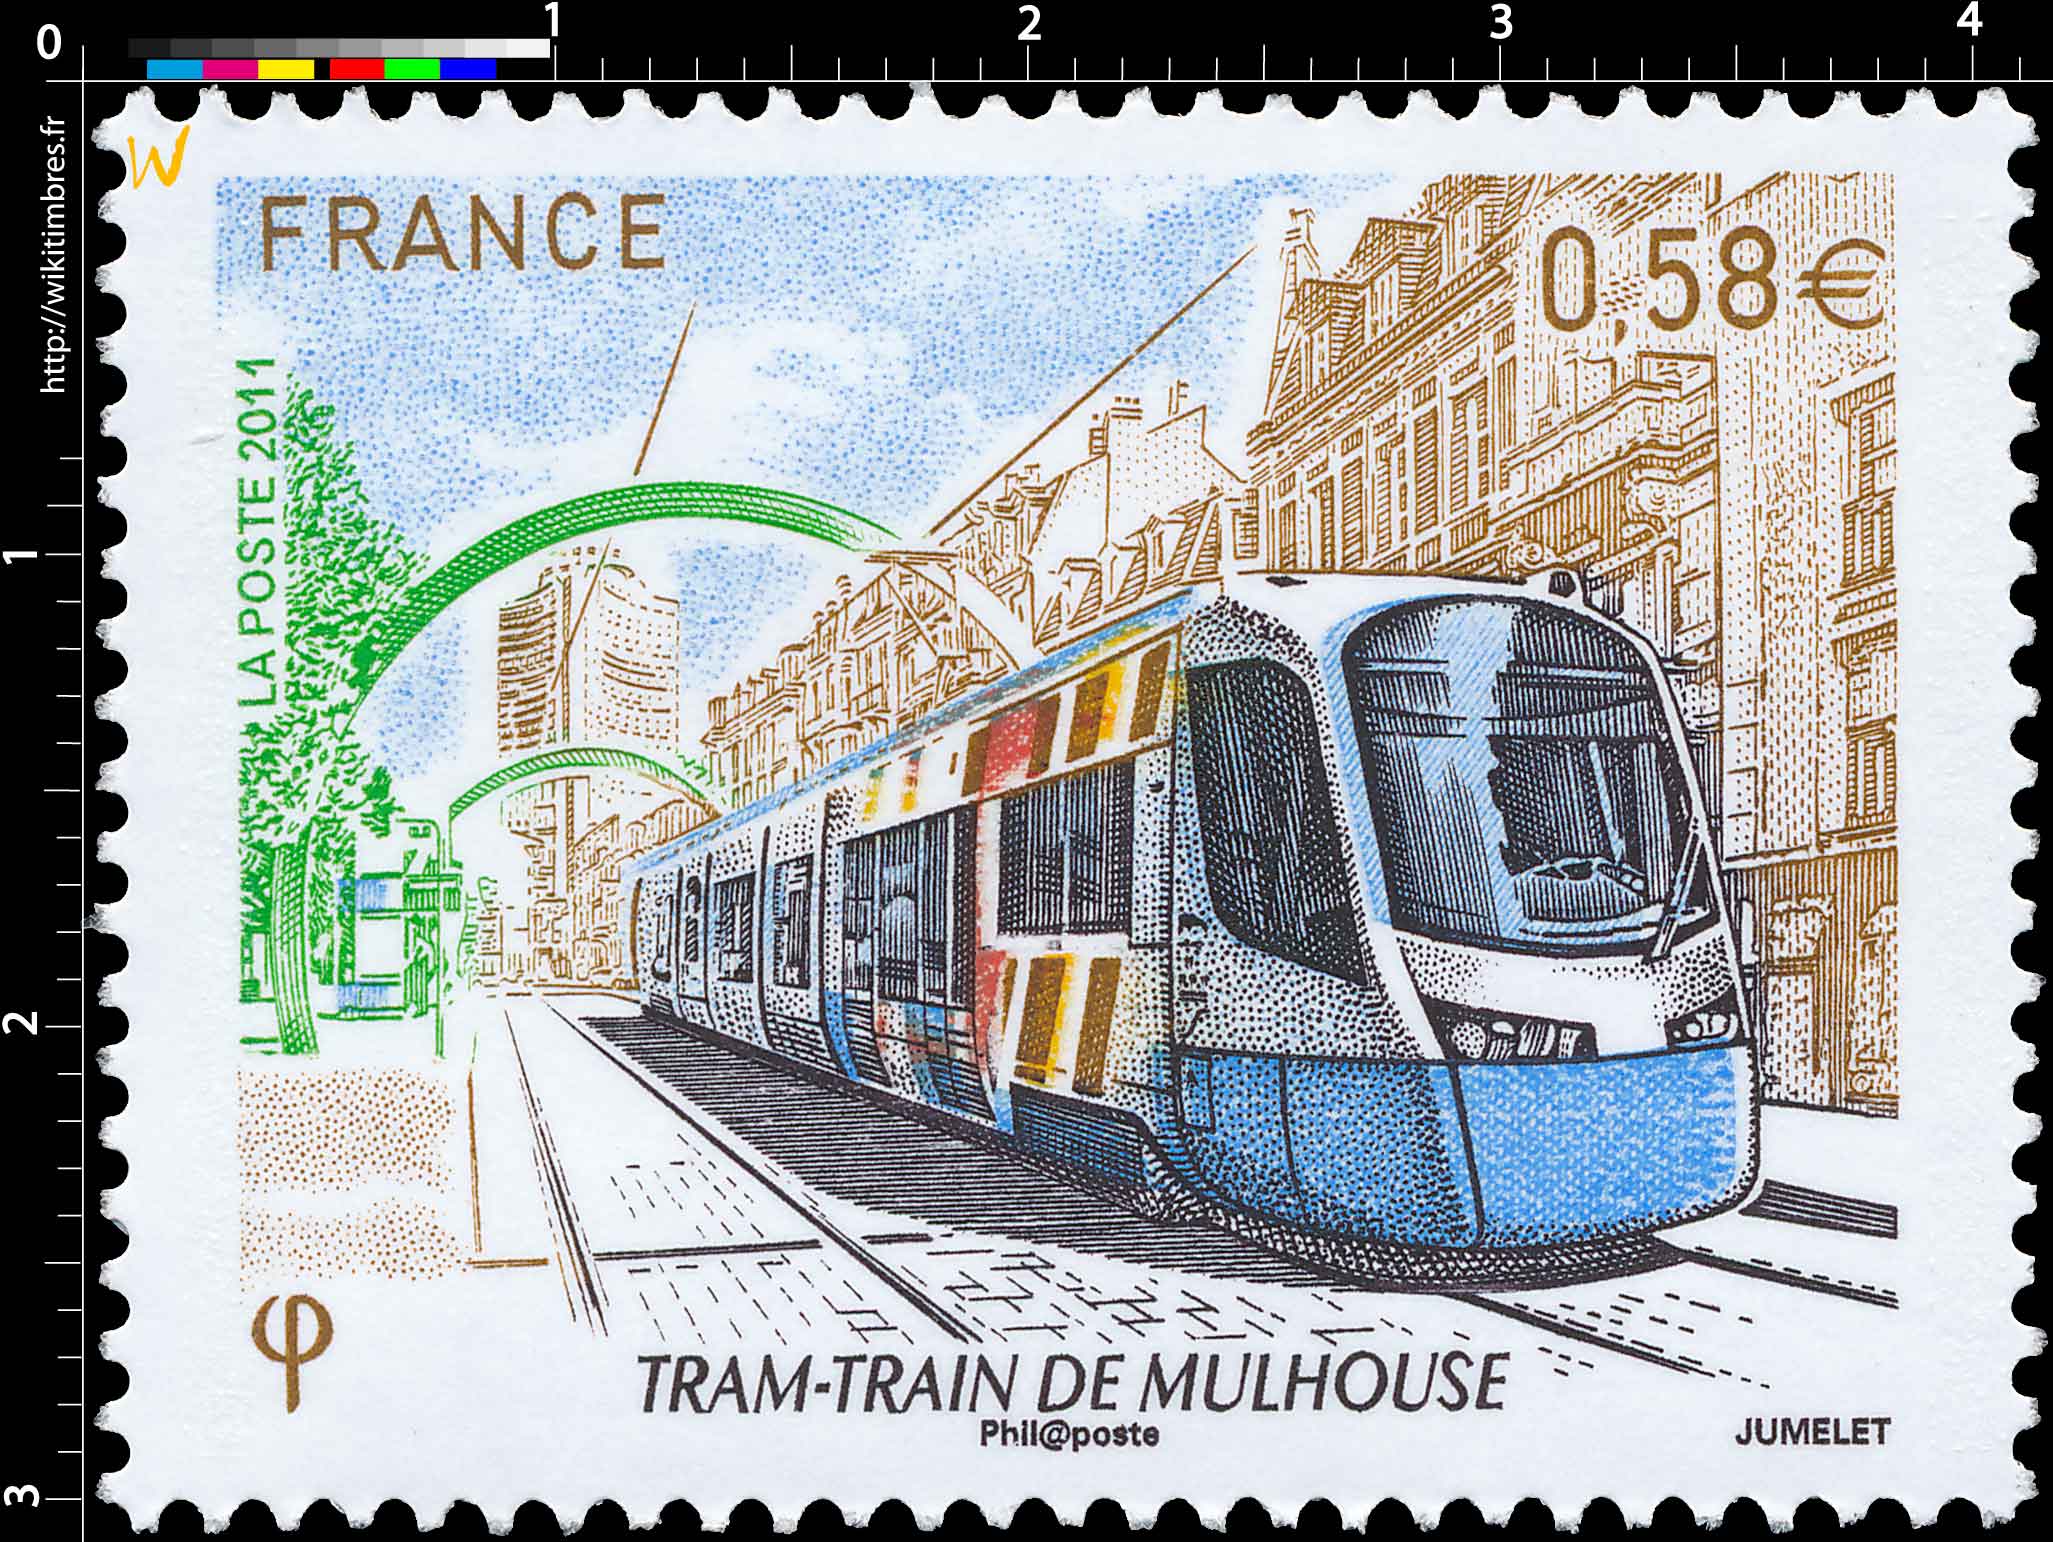 2011 Tram-Train de Mulhouse